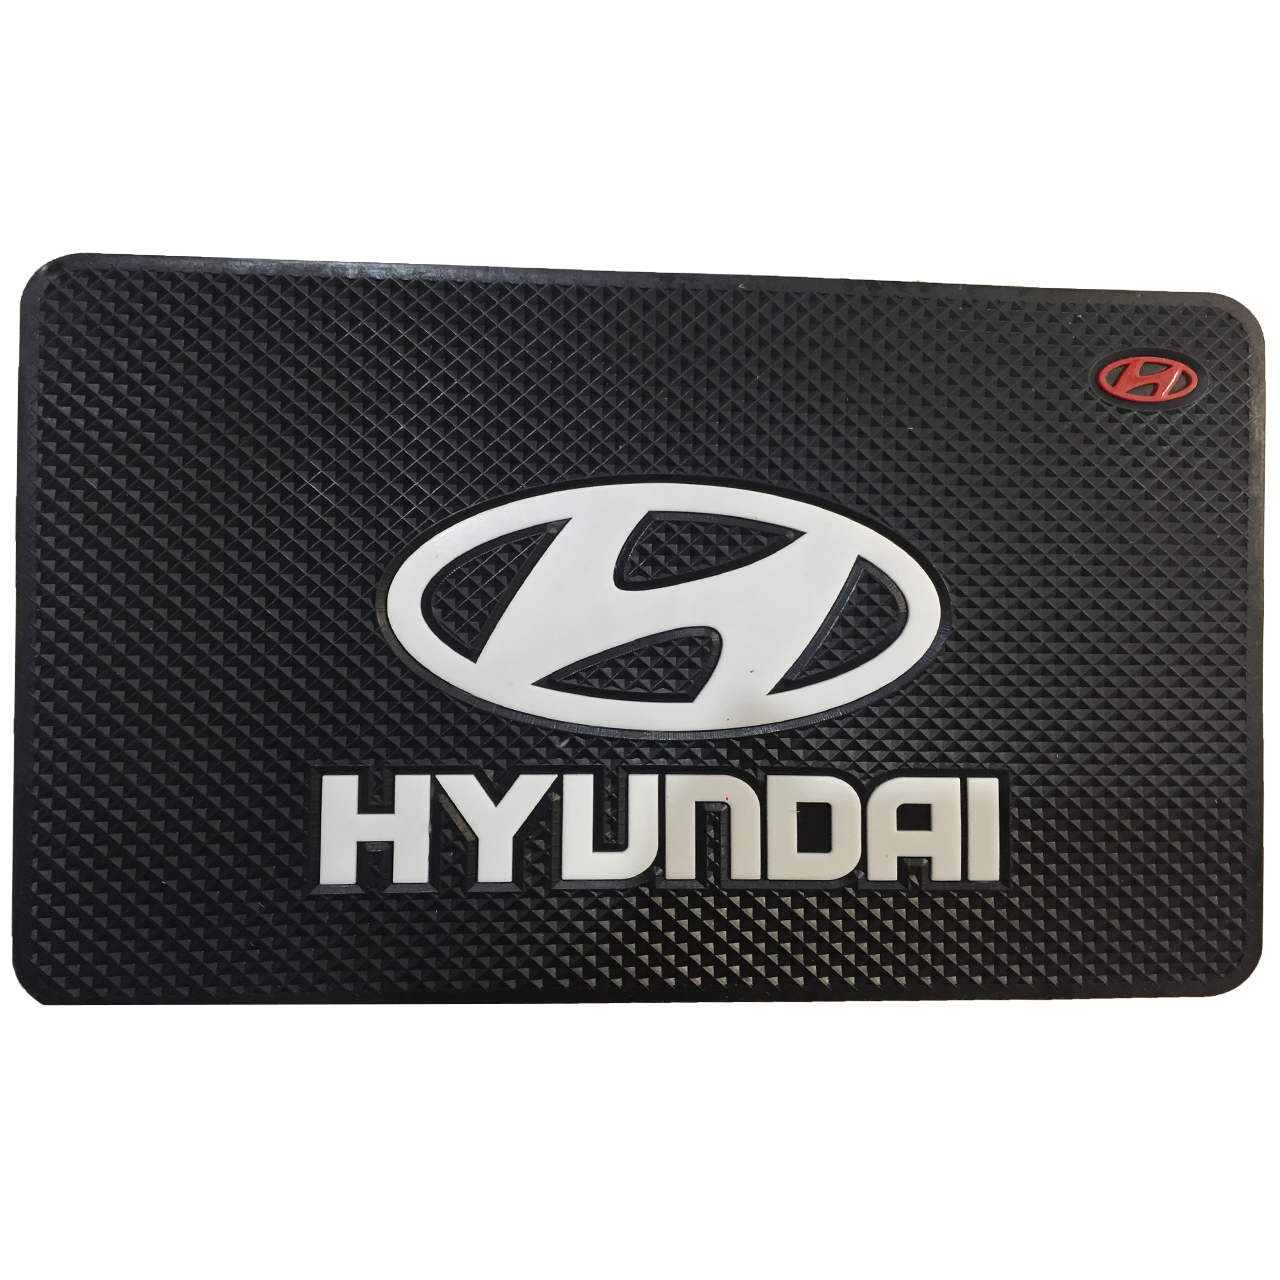 پد نگهدارنده اشیاء داخل خودرو طرح HYUNDAI مدل HY02